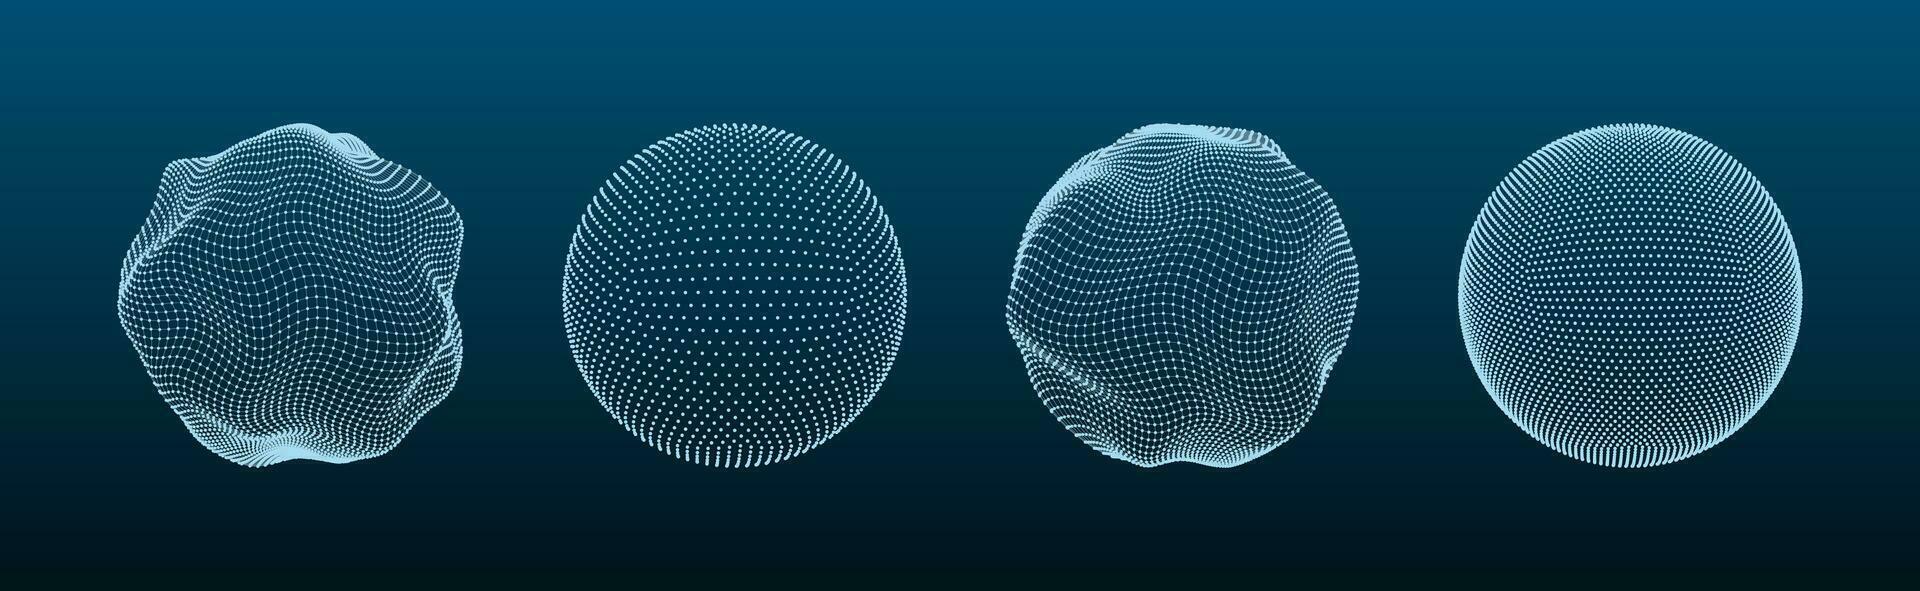 3d gebied gaas. wereldbol vormen met dots en lijn rooster, bol draad structuur modellen Matrix futuristische concept. digitaal veelhoekige ballen met deeltjes vector reeks